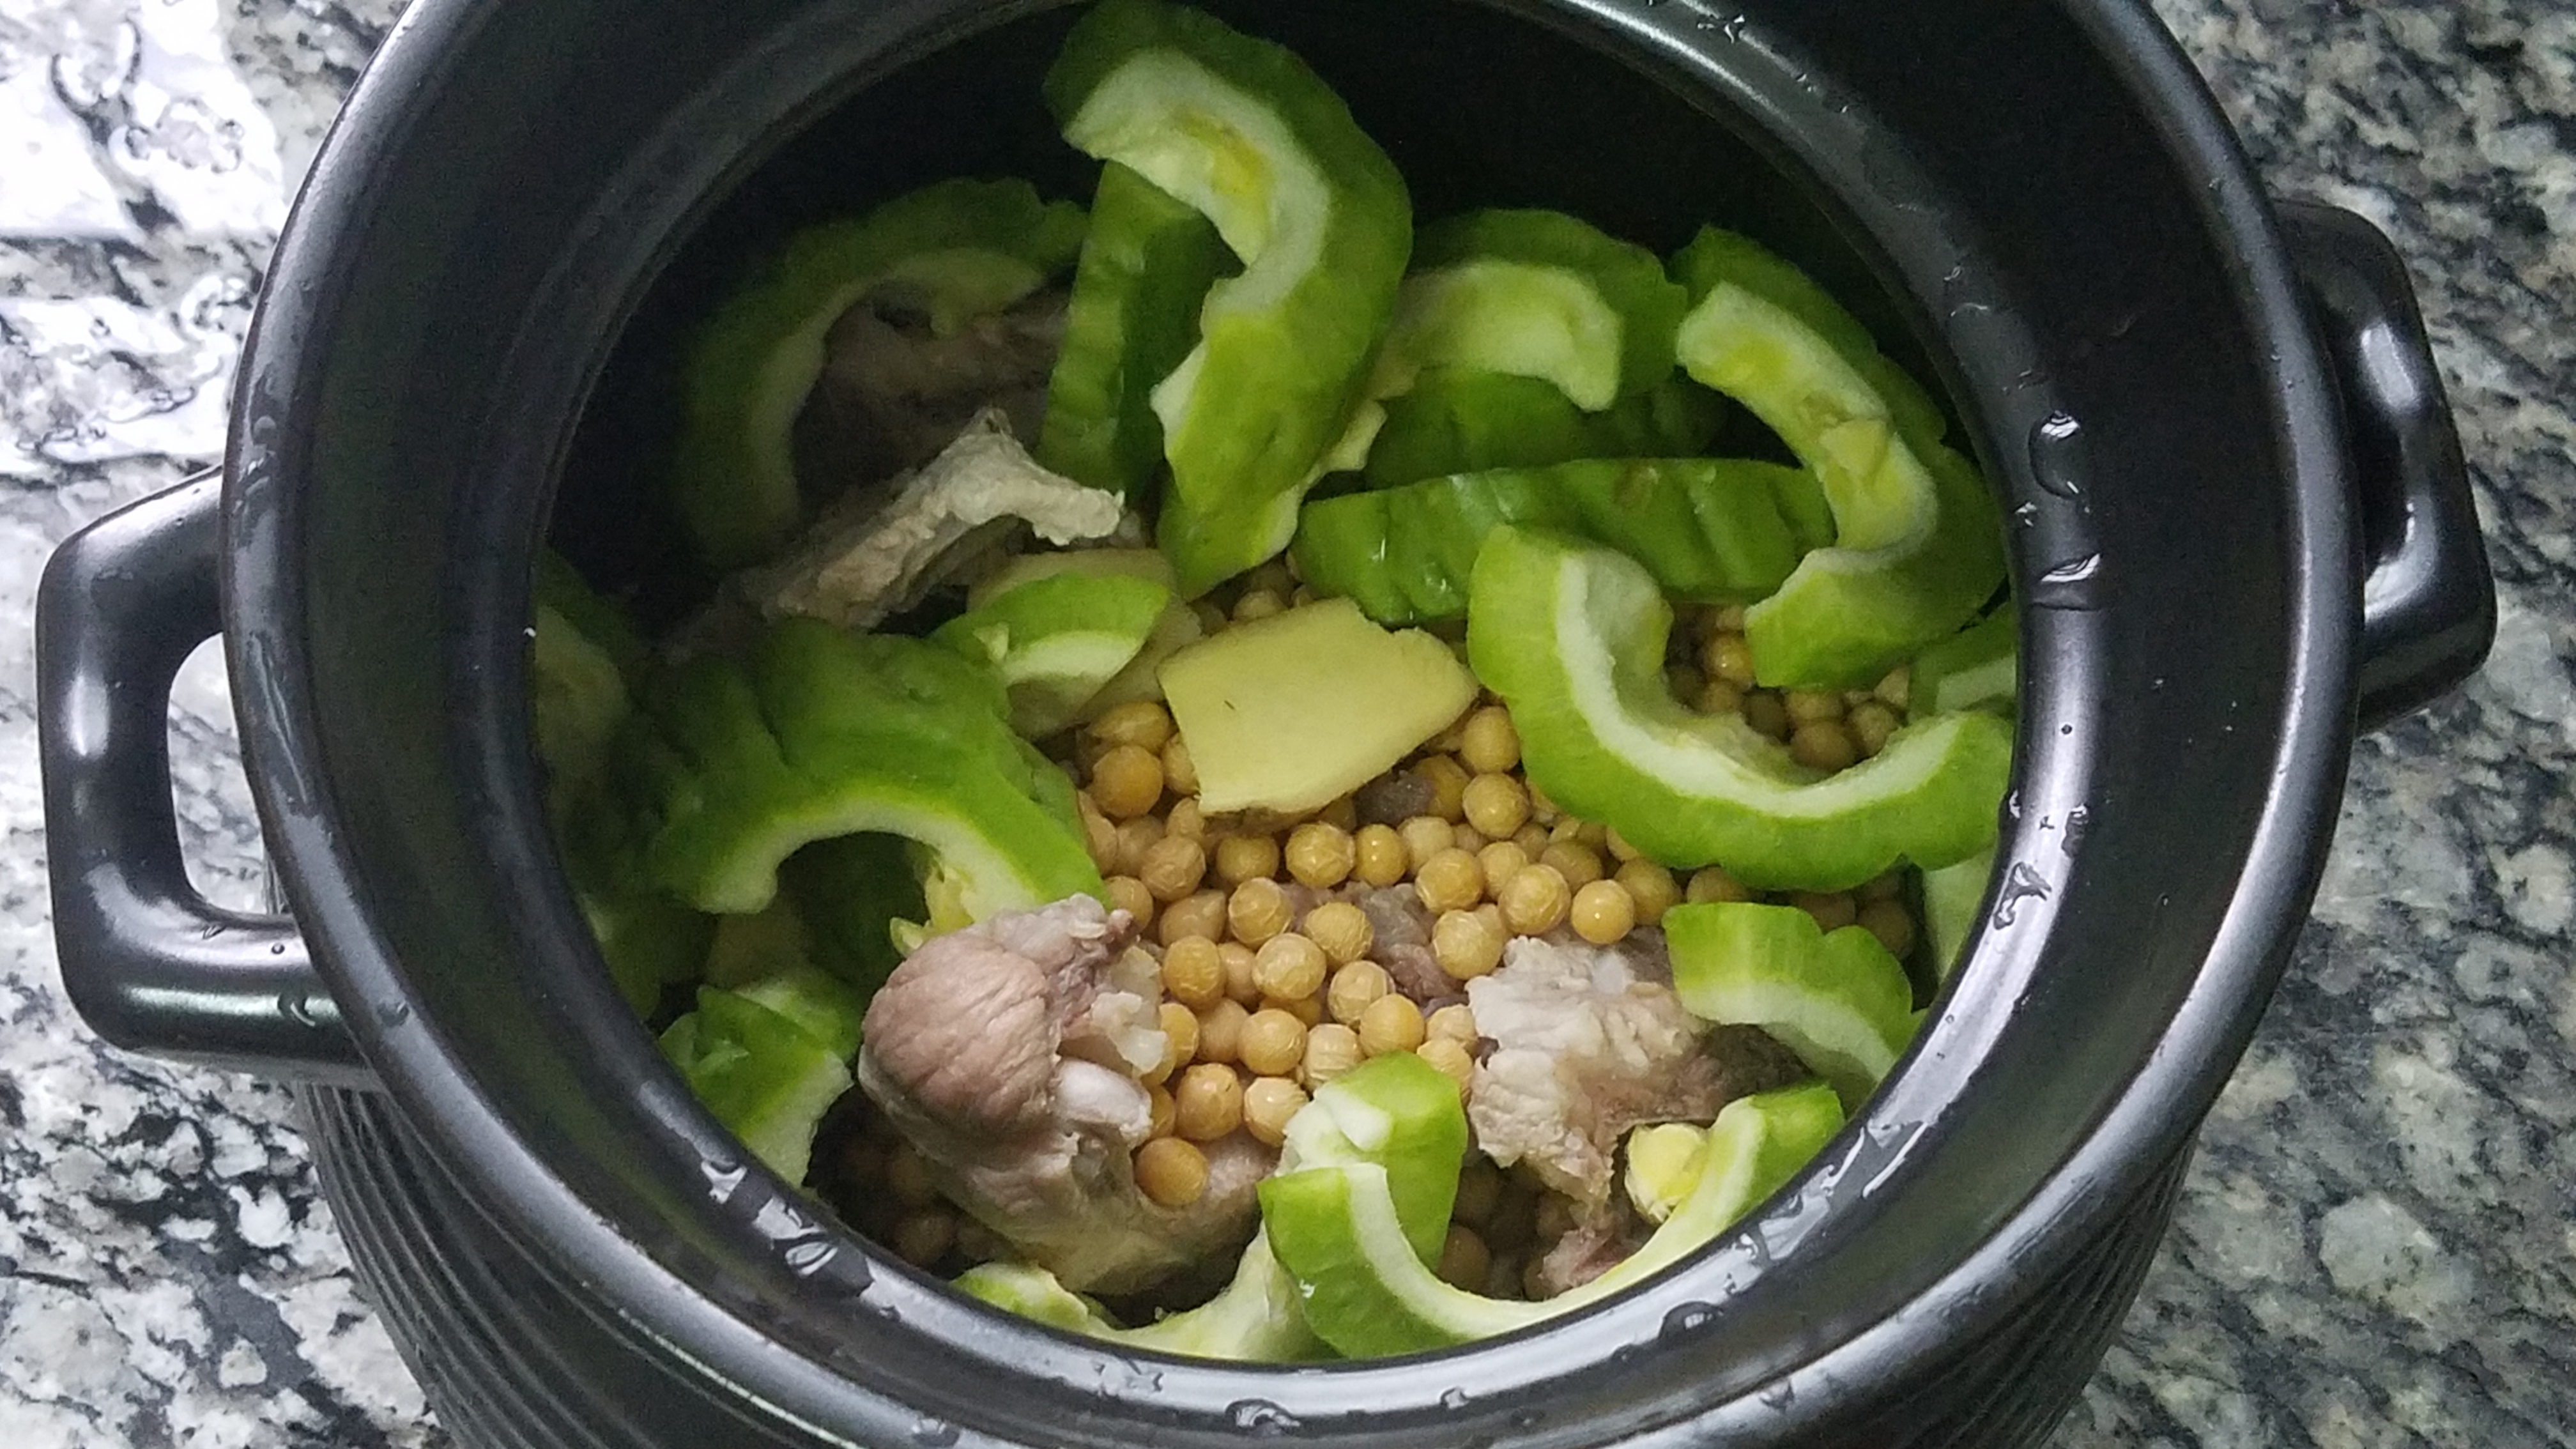 猪骨黄豆苦瓜汤,广东很出名的特色做法,简单好喝,清热又下火